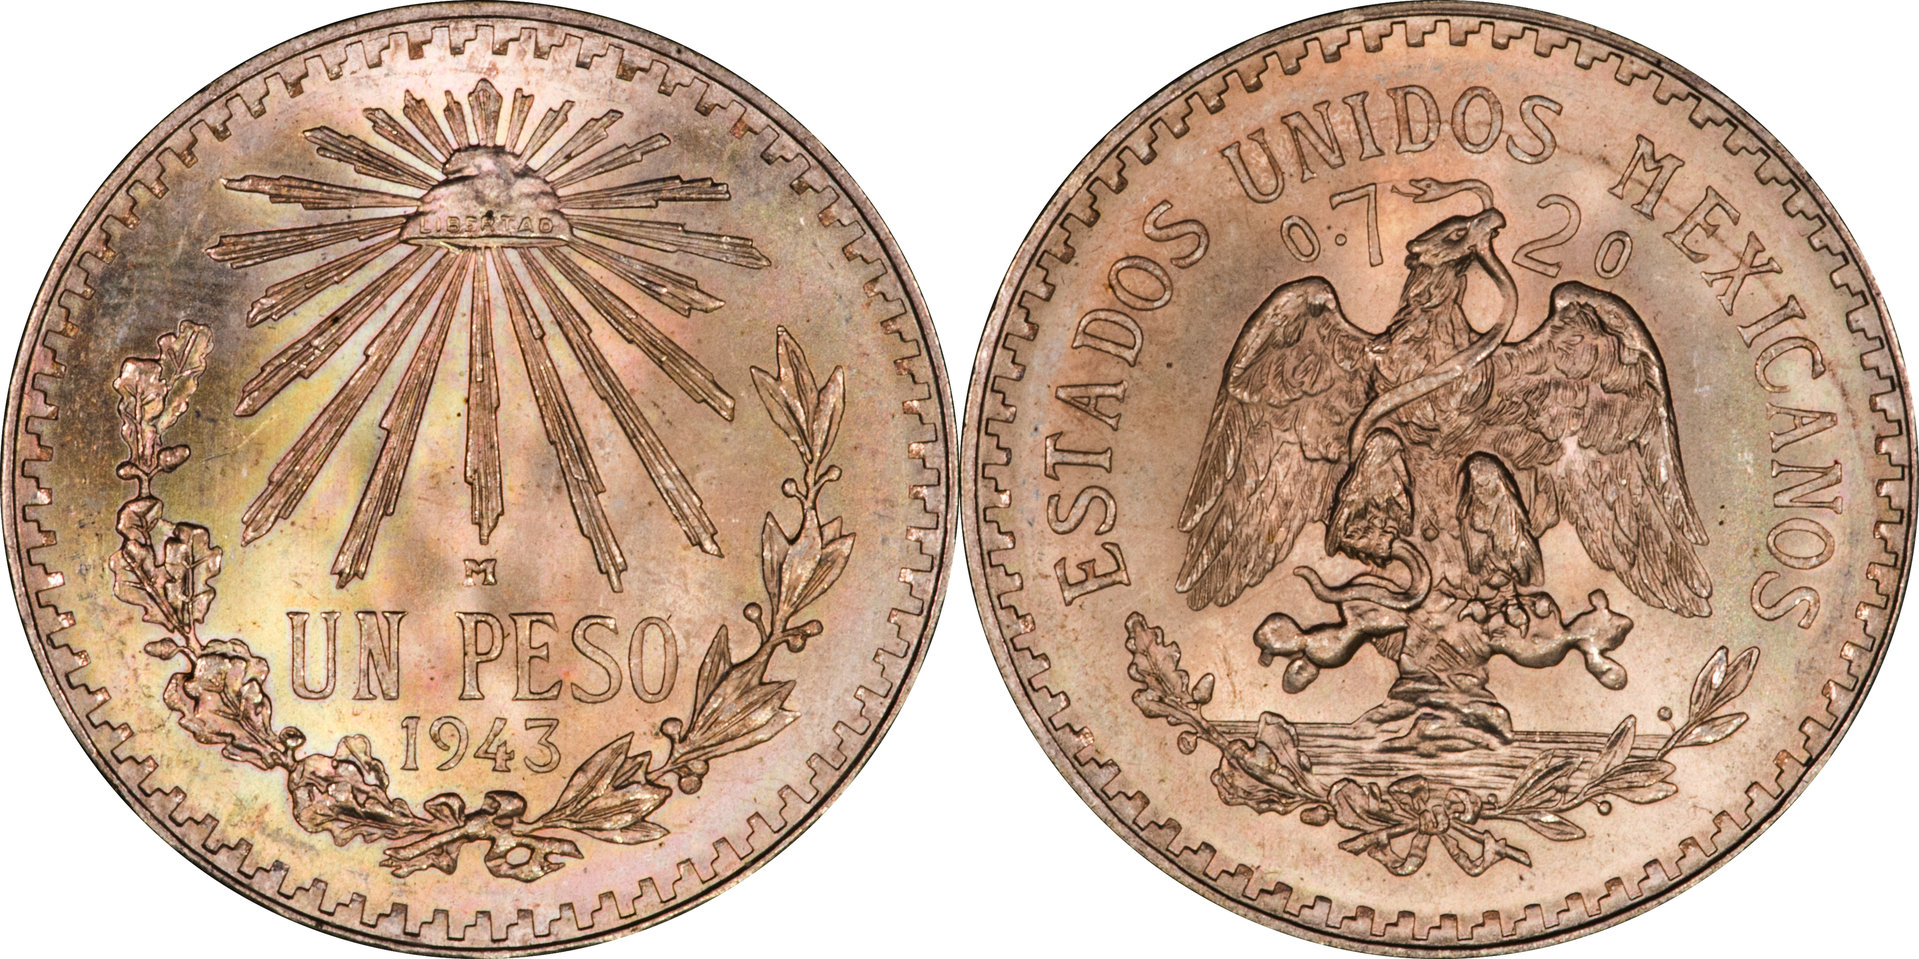 Mexico - 1943 M Un Peso.jpg